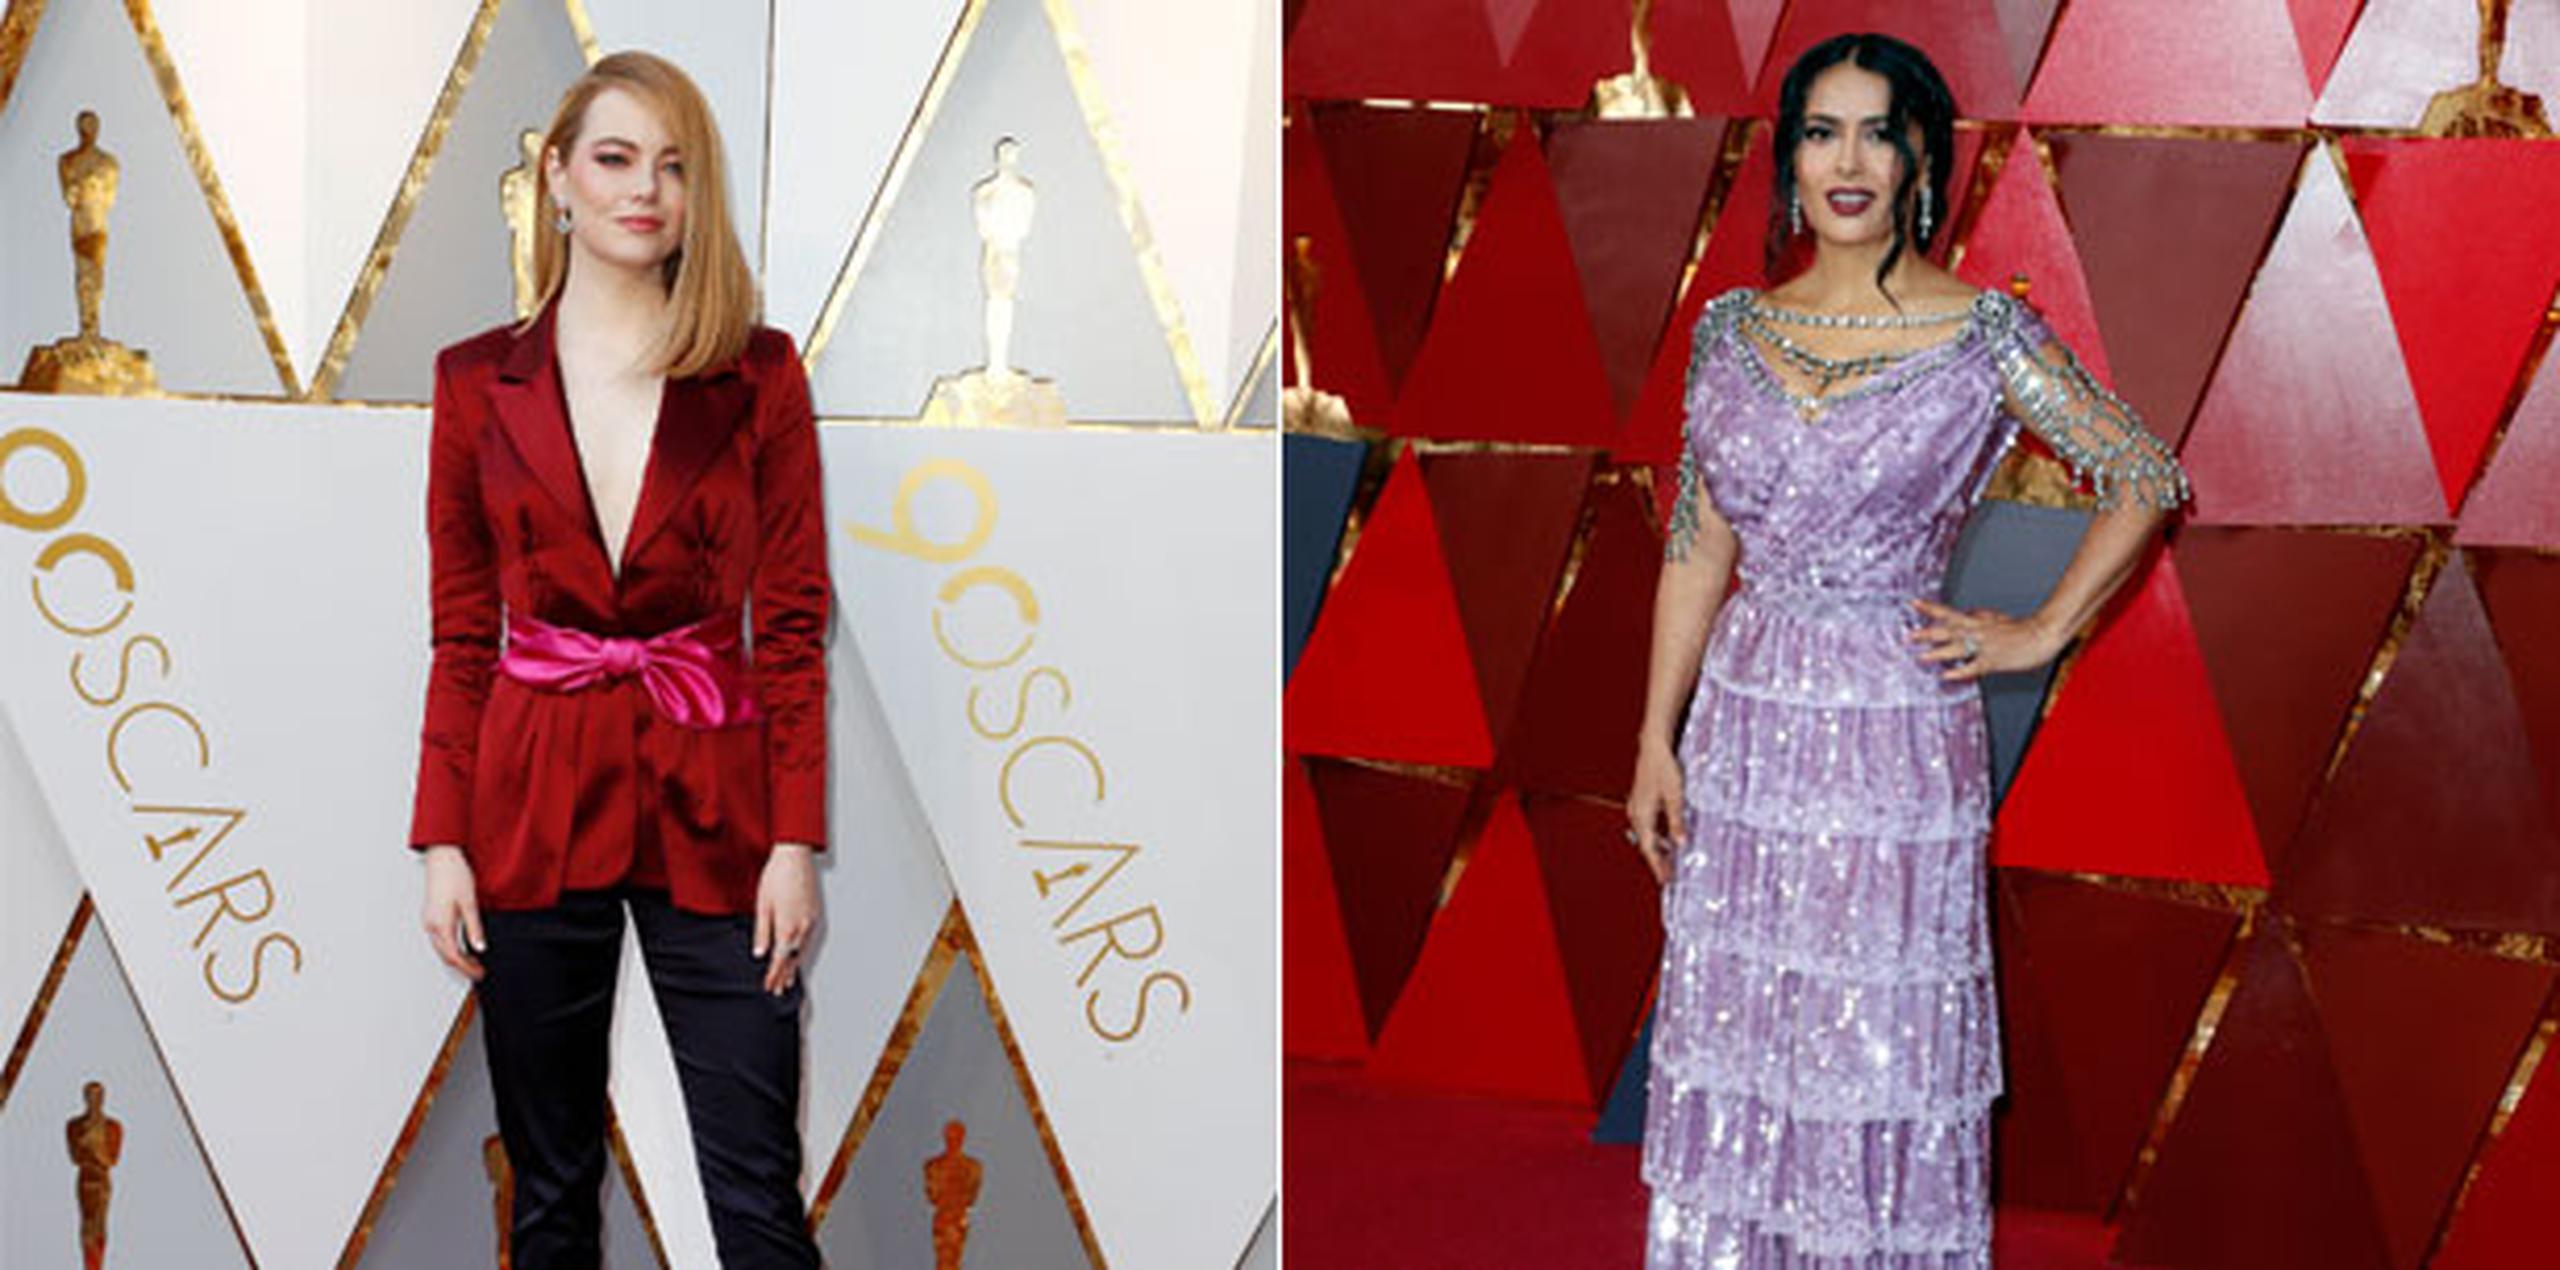 Según los usuarios en las redes sociales, la protagonista de "La, la, land", Emma Stone, ha sido la mejor vestida sobre la alfombra roja de los Óscar 2018, quien, sin duda, sorprendió con su vestuario, muy alejado de los cánones habituales en una alfombra de Hollywood. (EFE)